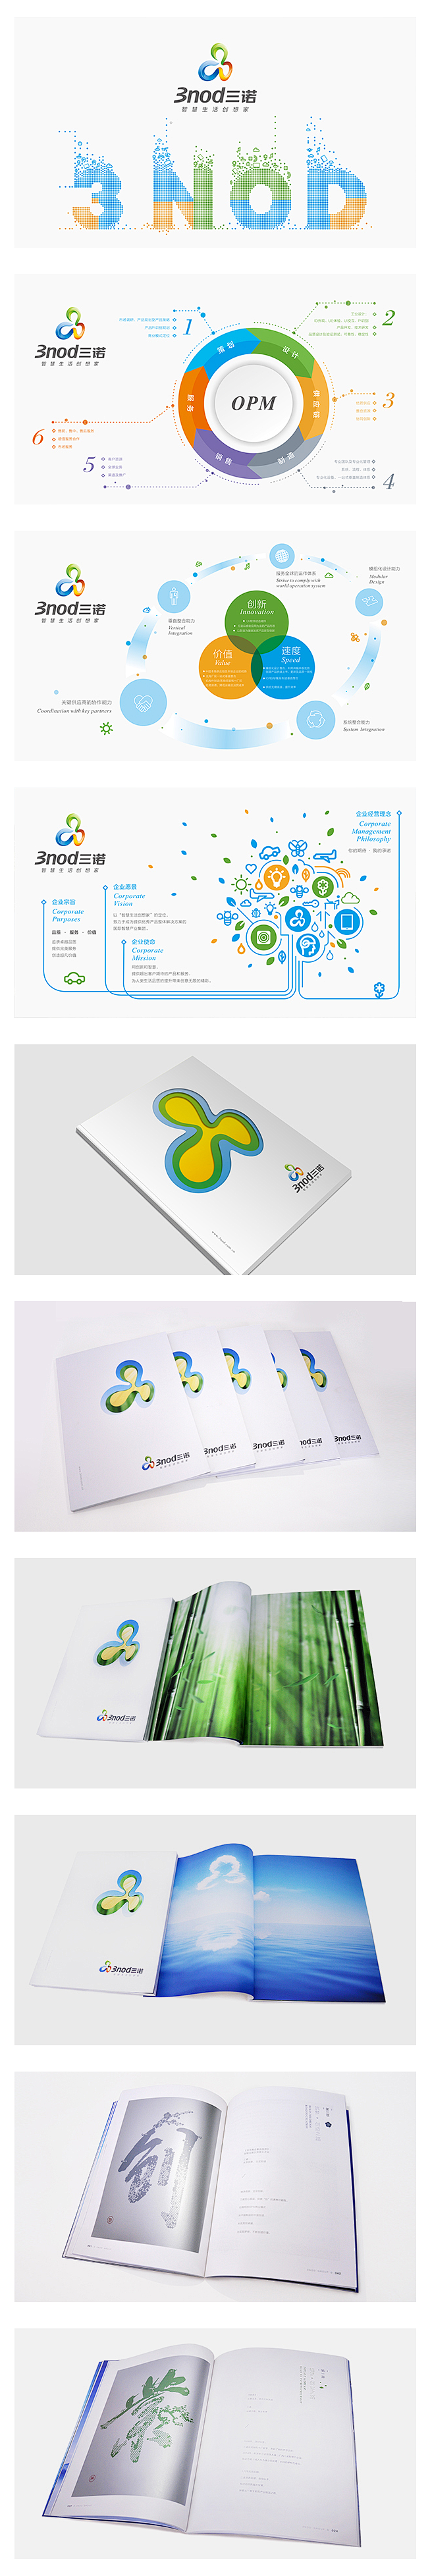 三诺集团企业品牌画册设计